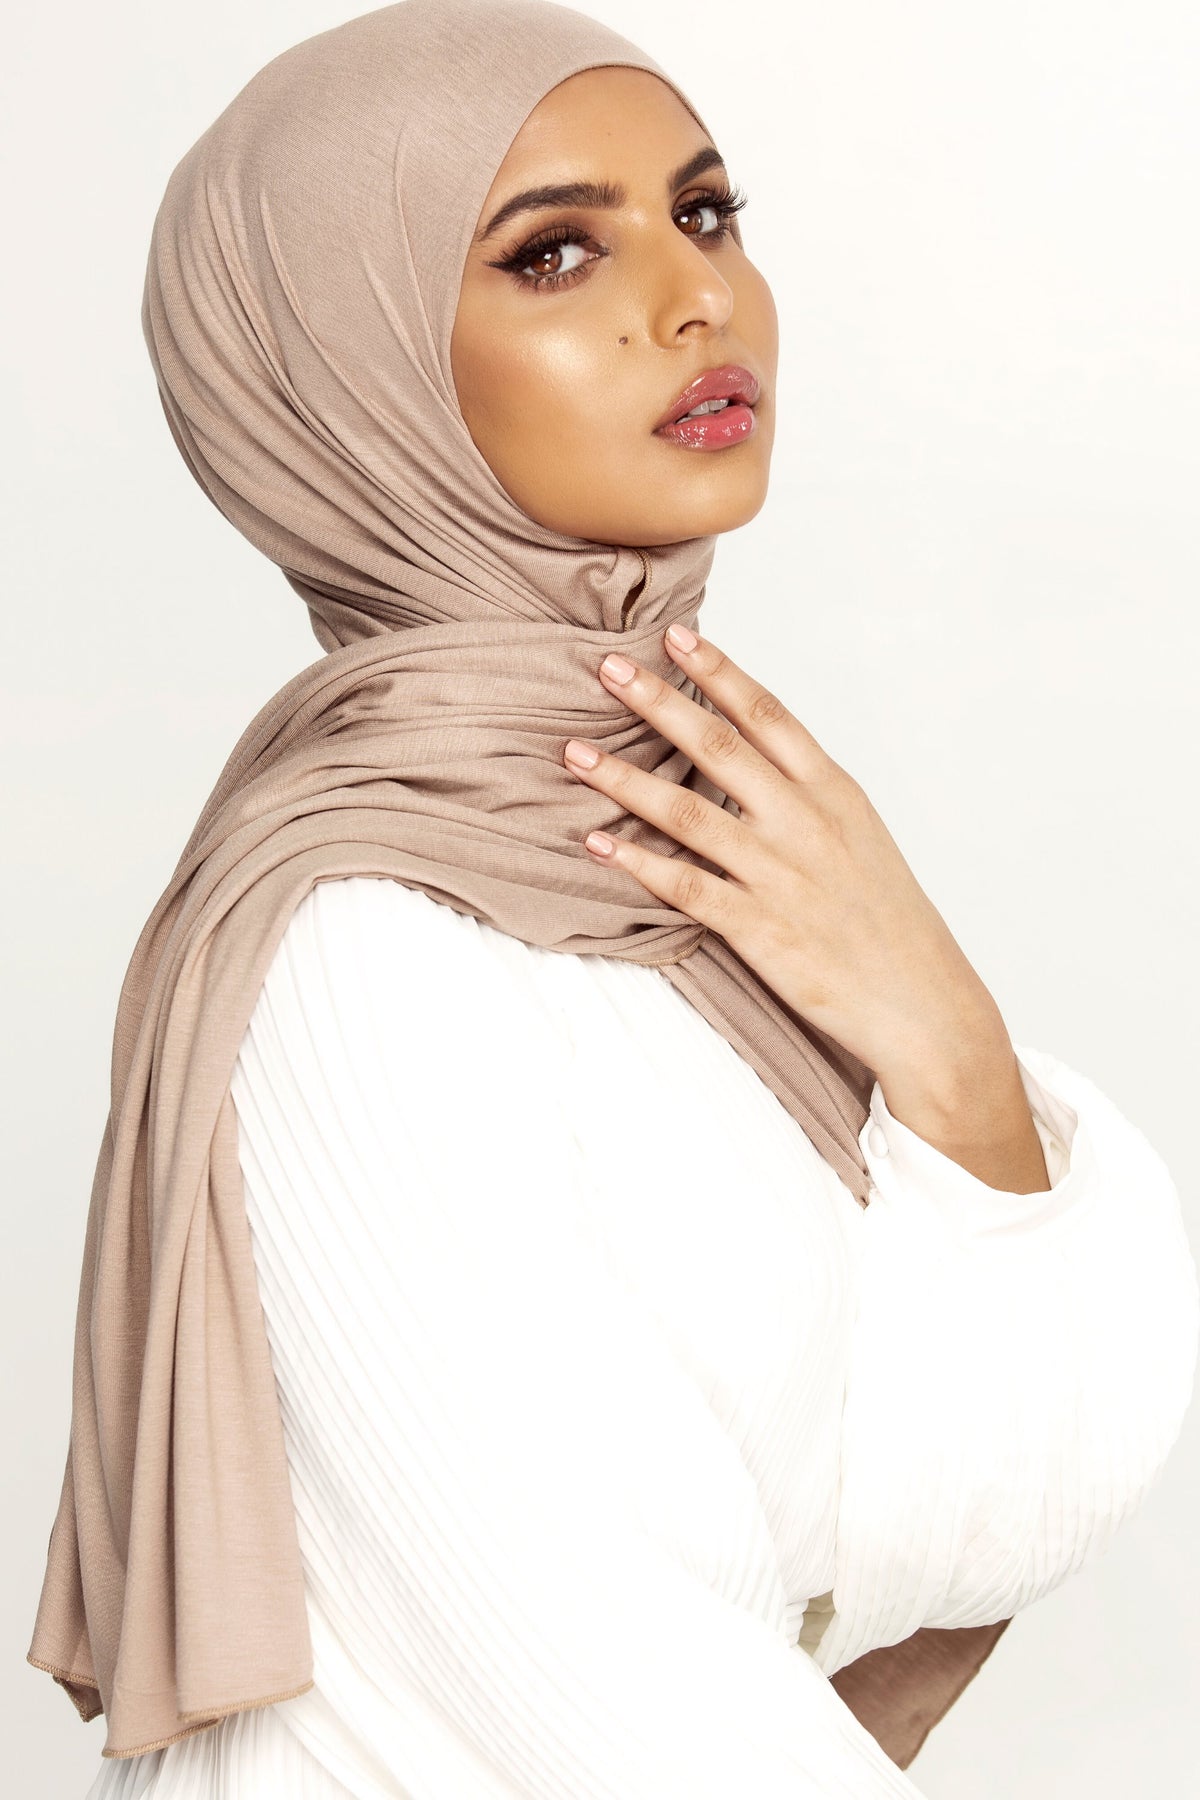 Luxury Jersey Hijab - Caffe epschoolboard 